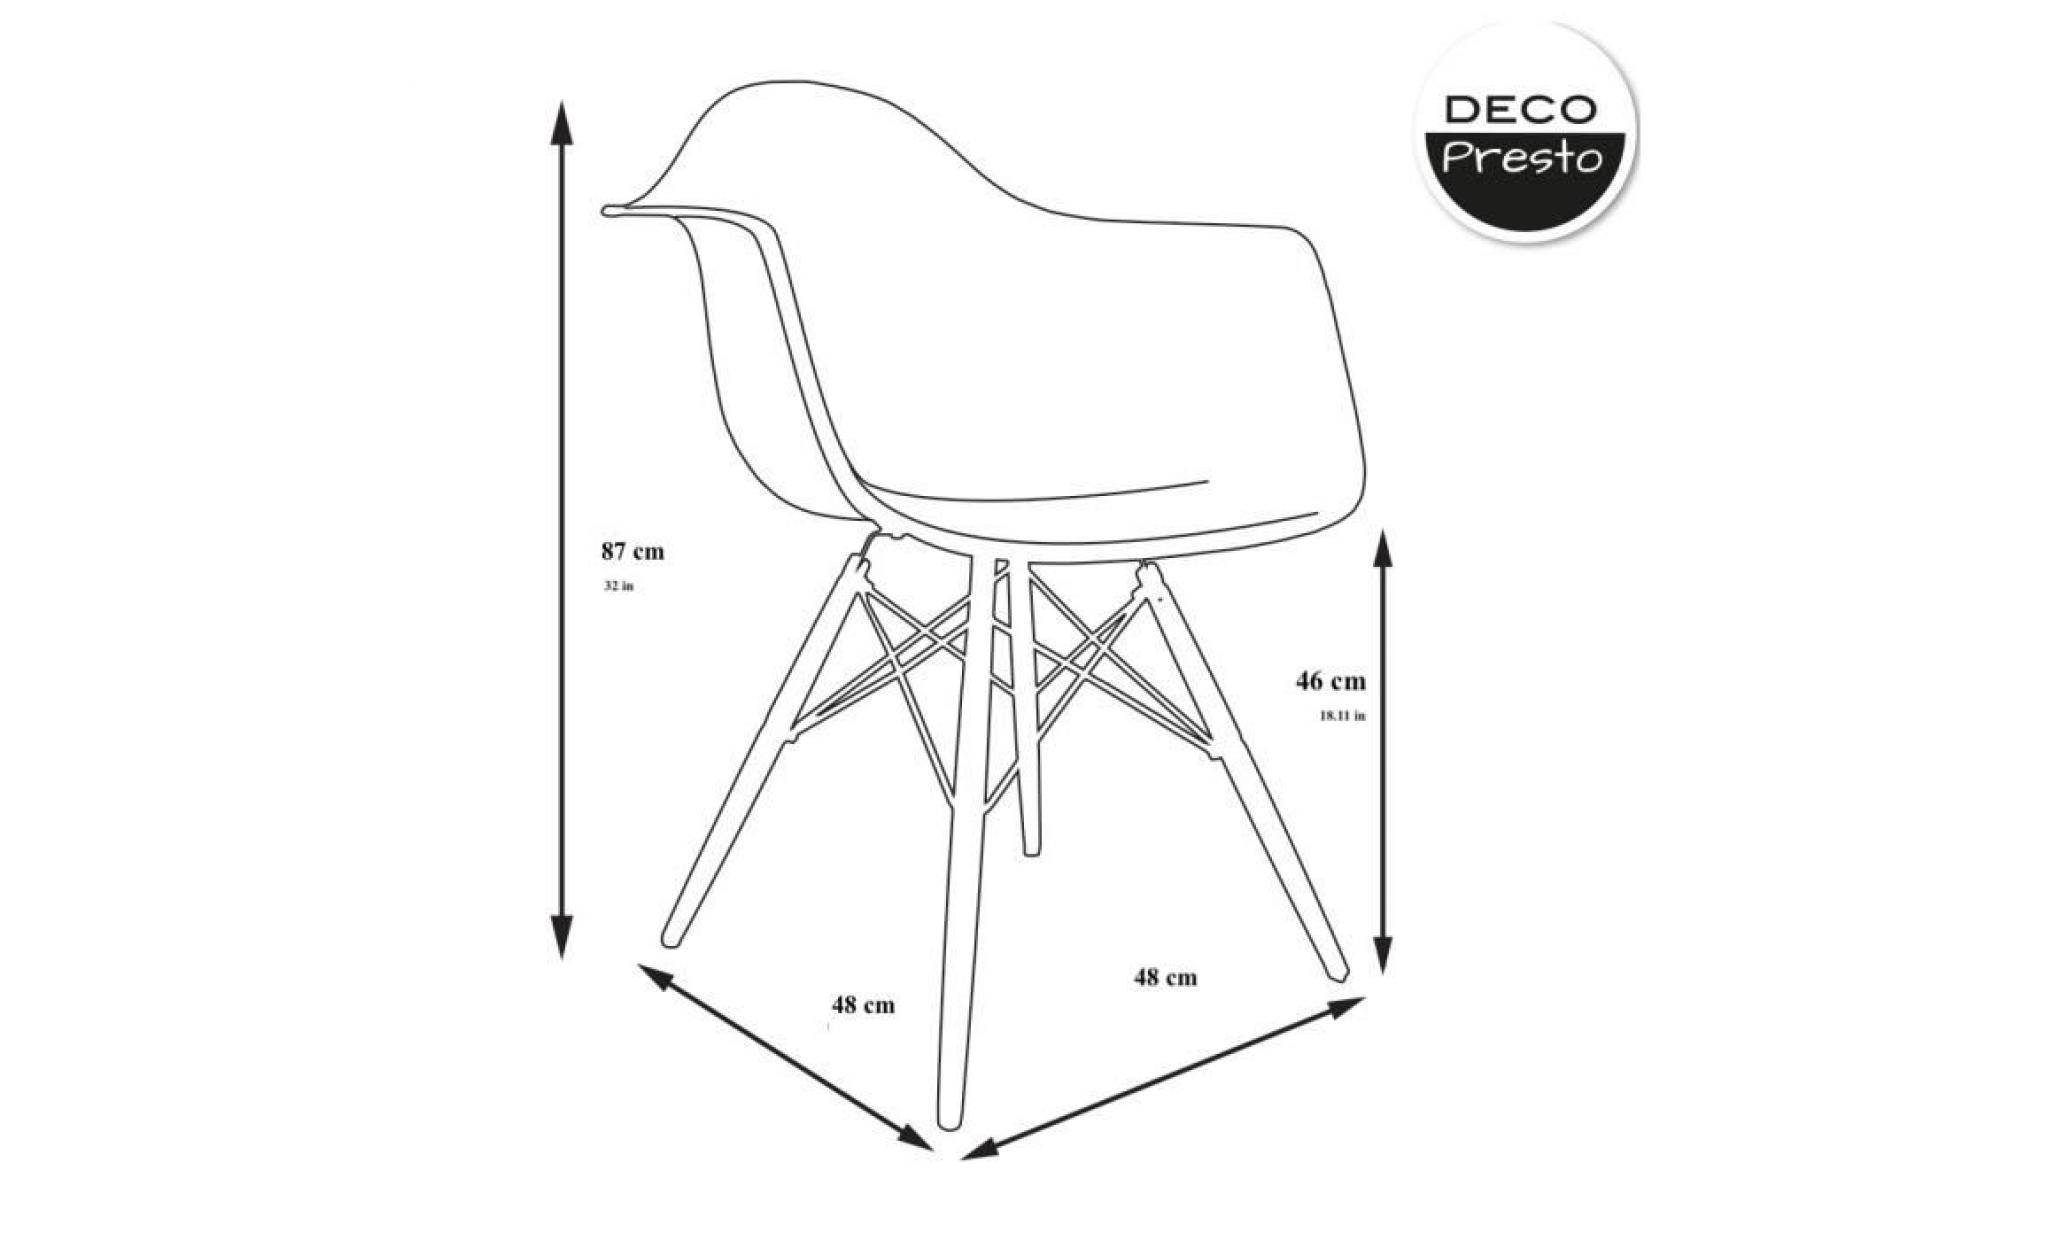 1 x fauteuil design  scandinave  rouge pieds: bois vernis noyer decopresto dp dawd re 1 pas cher